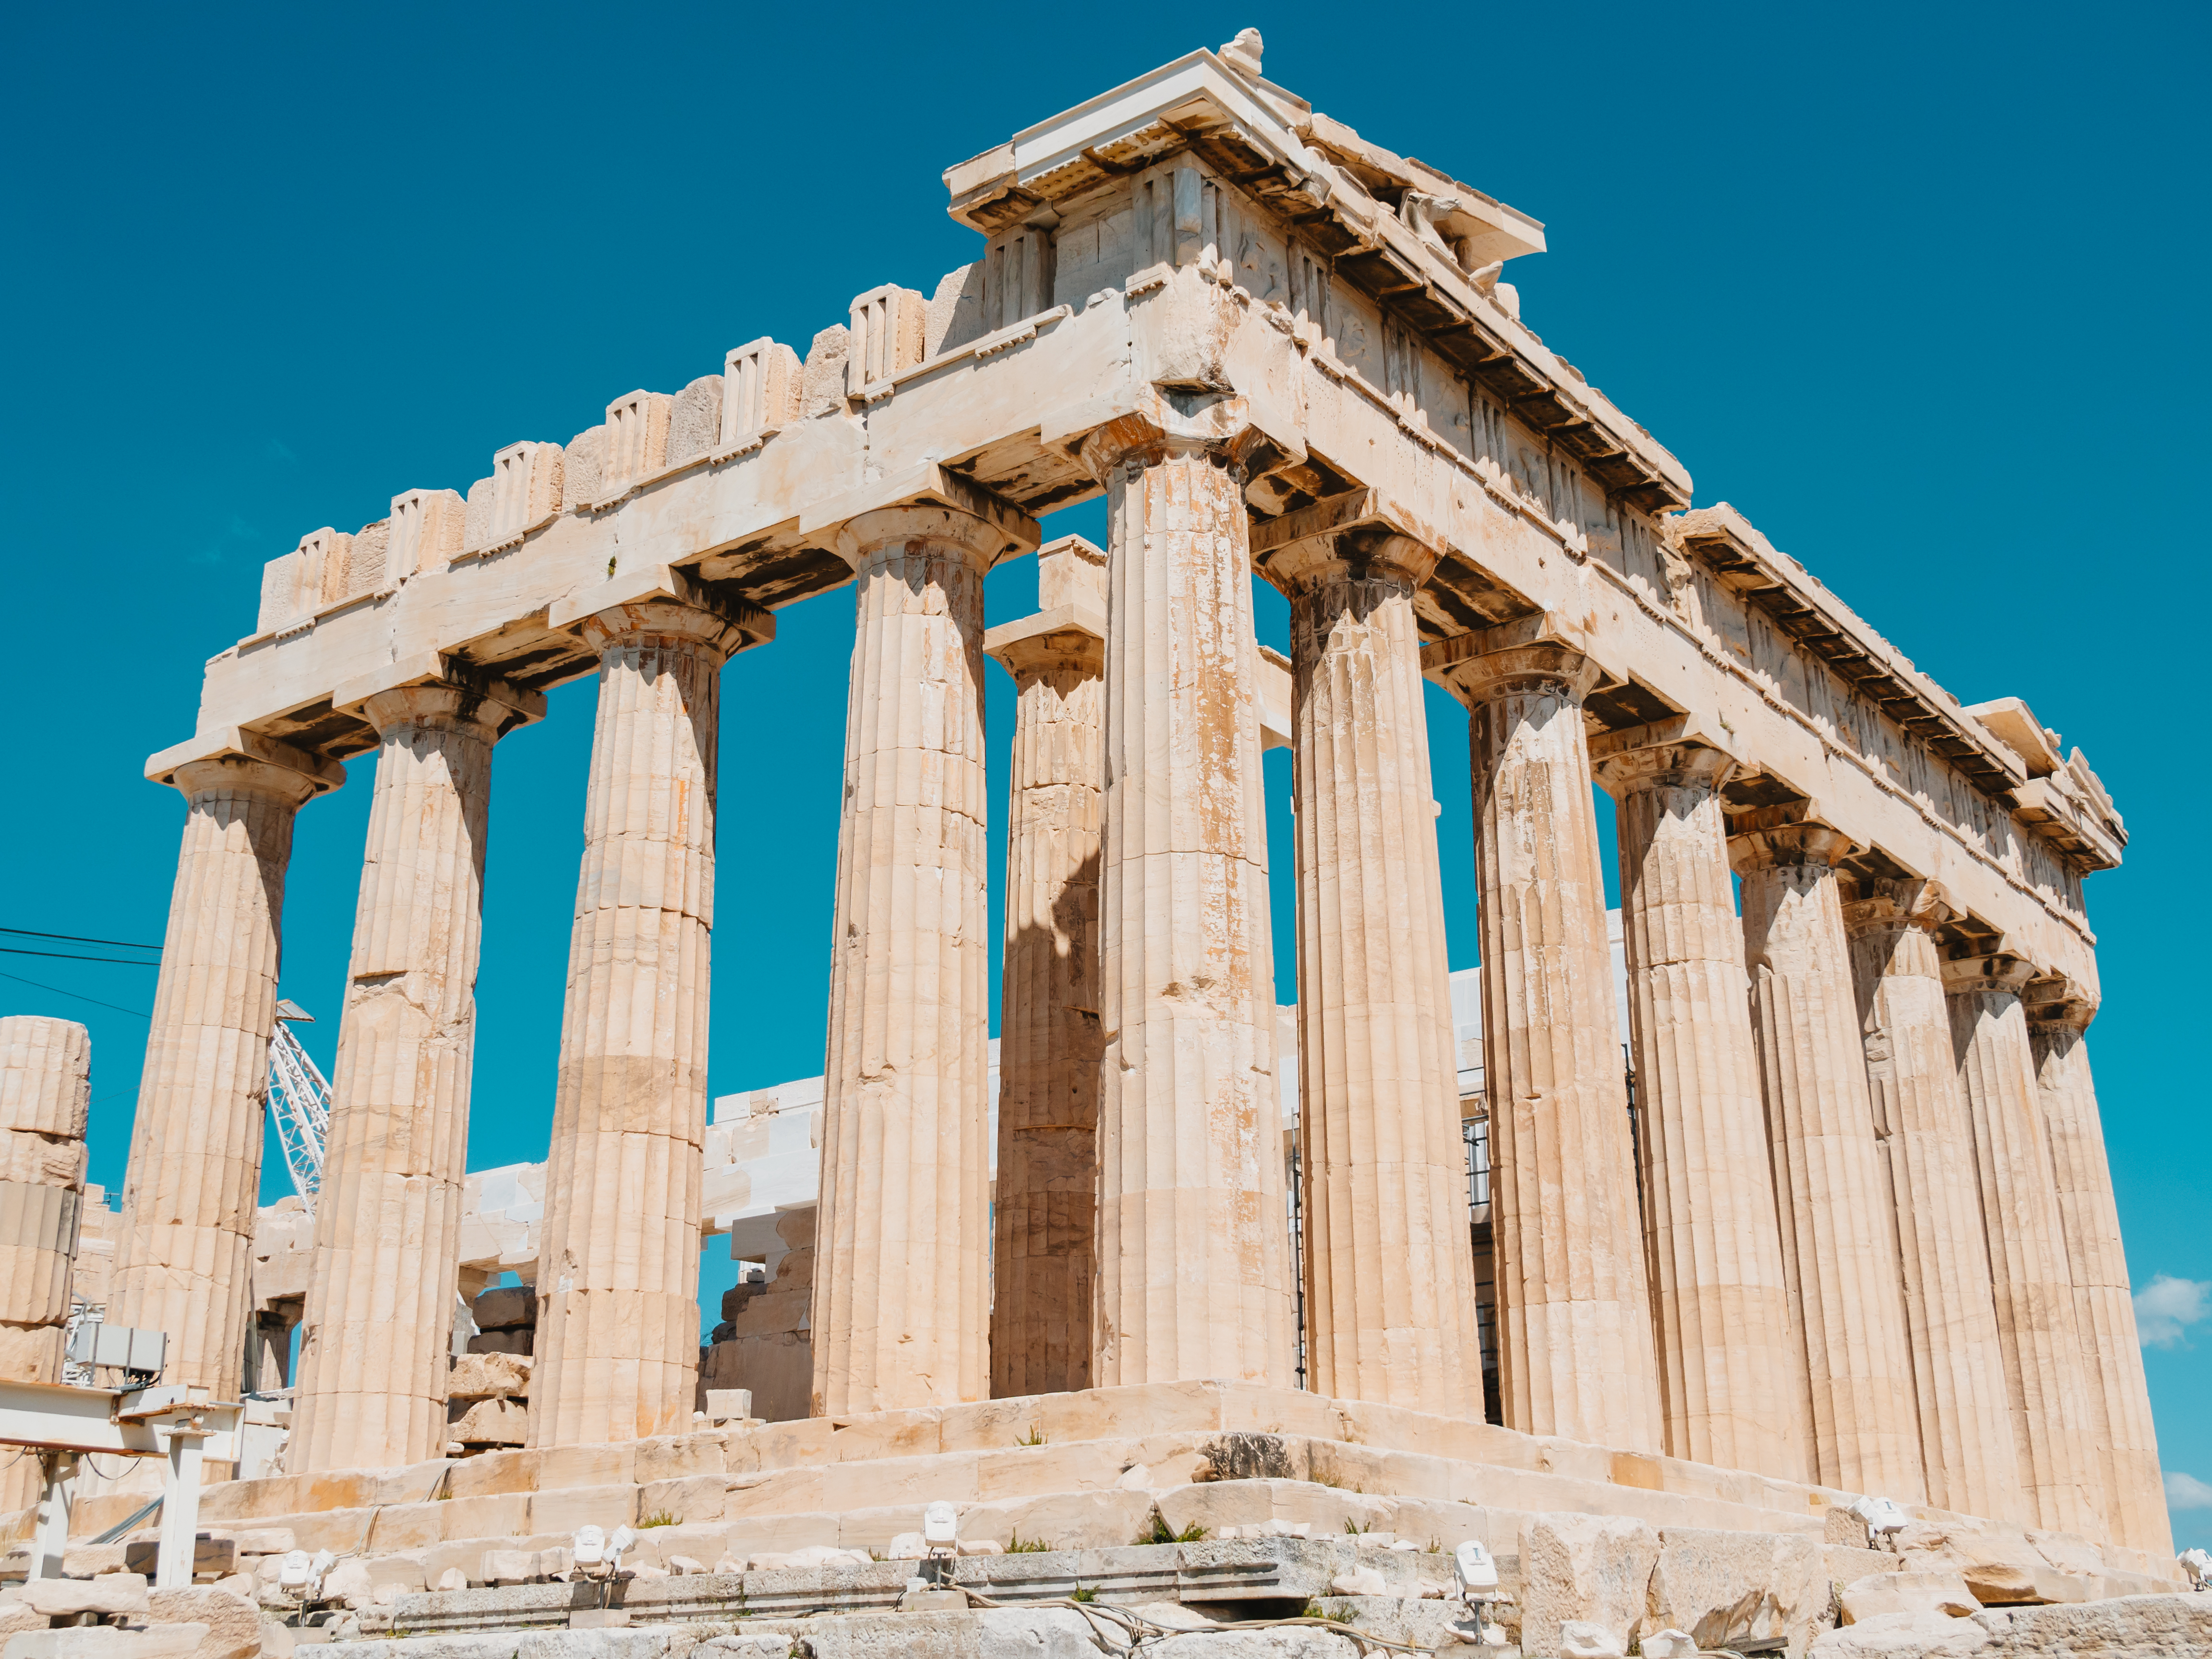 ギリシャの首都アテネを観光 アクロポリス パルテノン神殿 アテネ競技場 インドア人事のこだわり